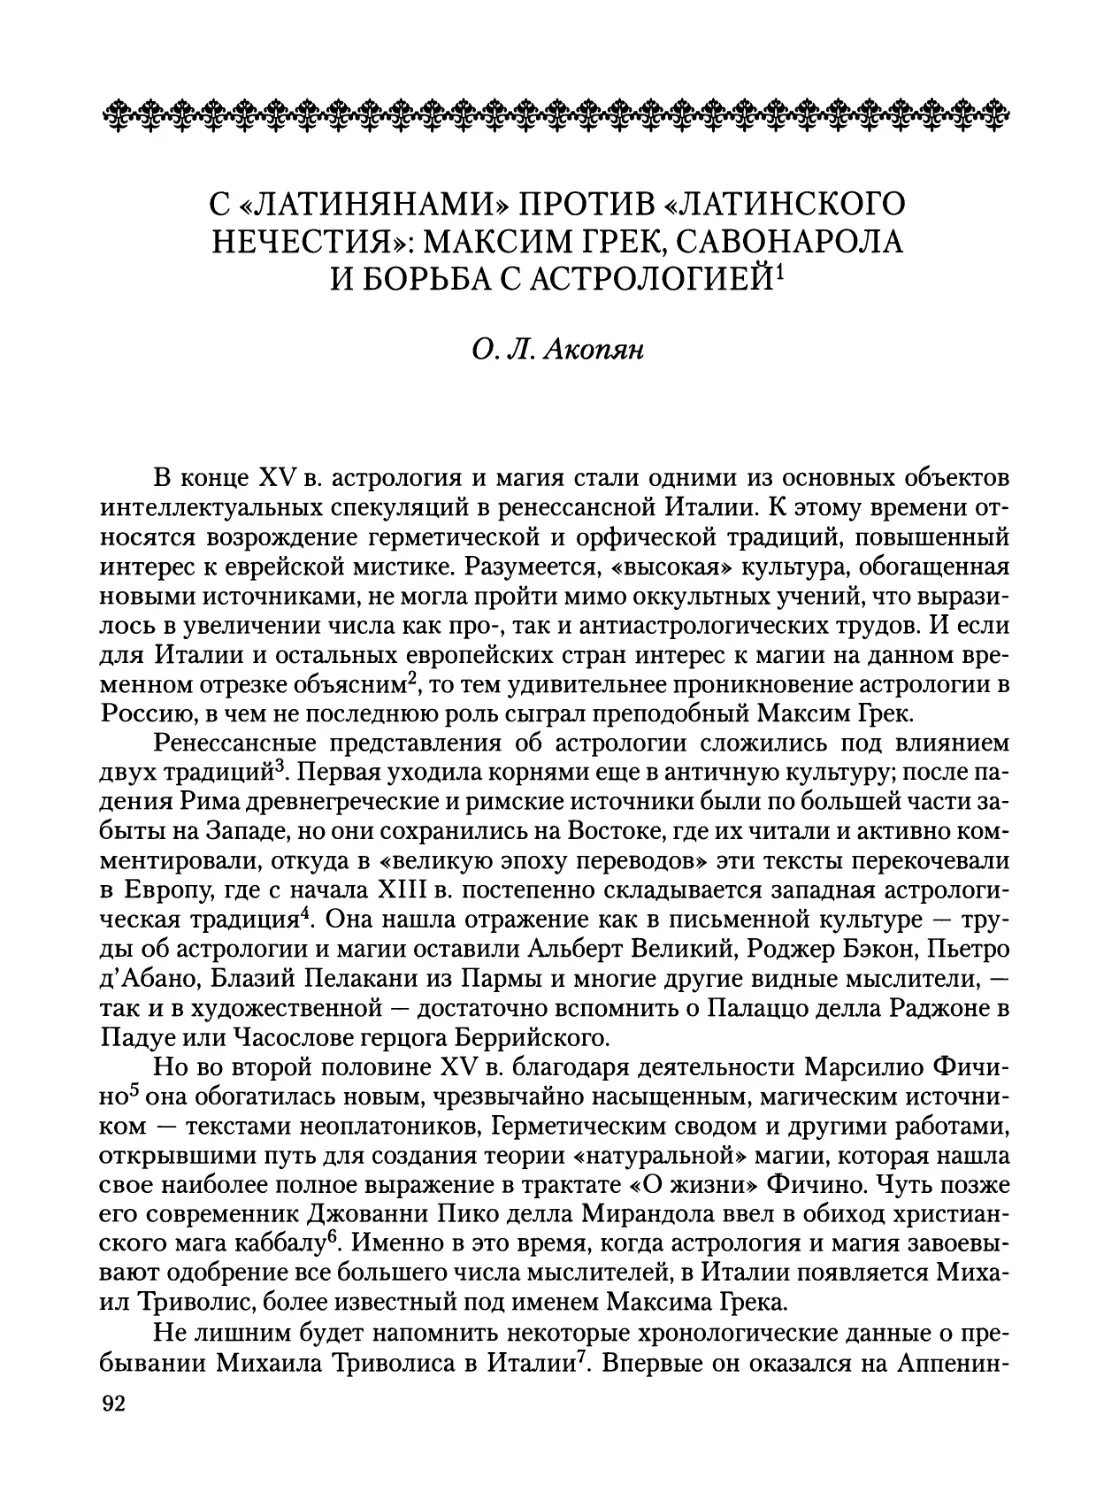 Акопян О. Л. С «латинянами» против «латинского нечестия»: Максим Грек, Савонарола и борьба с астрологией